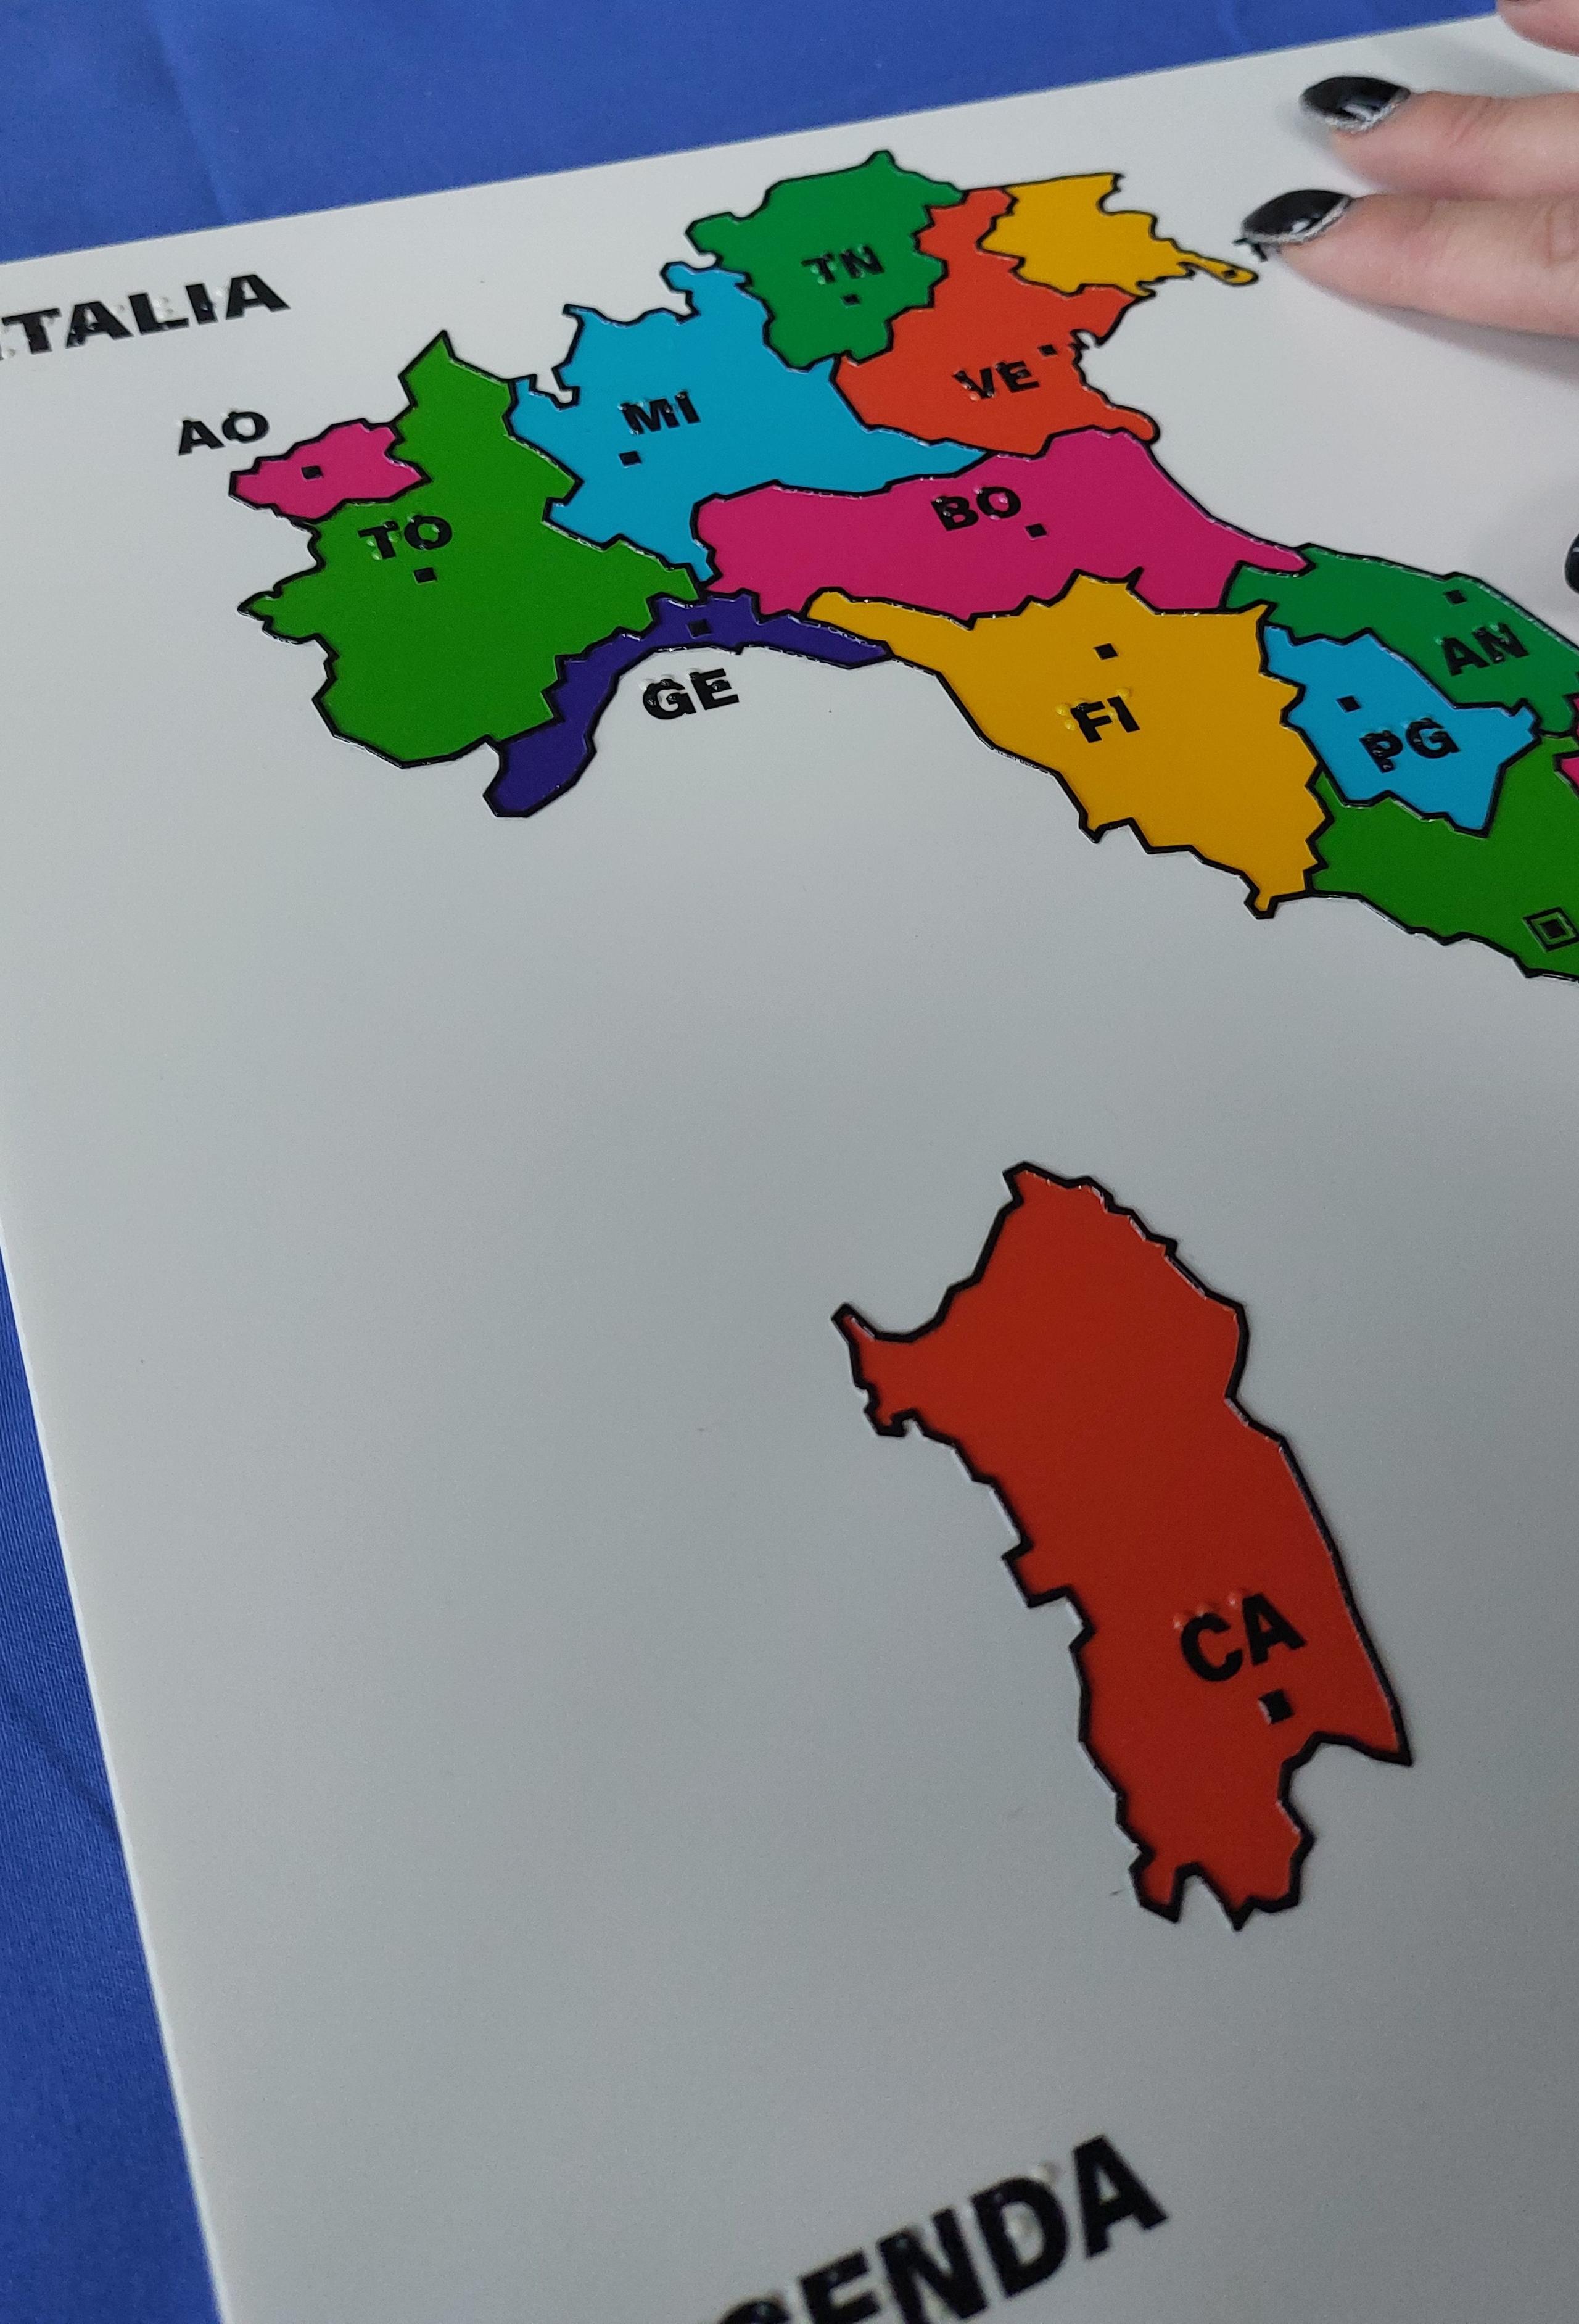 cartina geografica politica dell'ITALIA  - iva al 22%